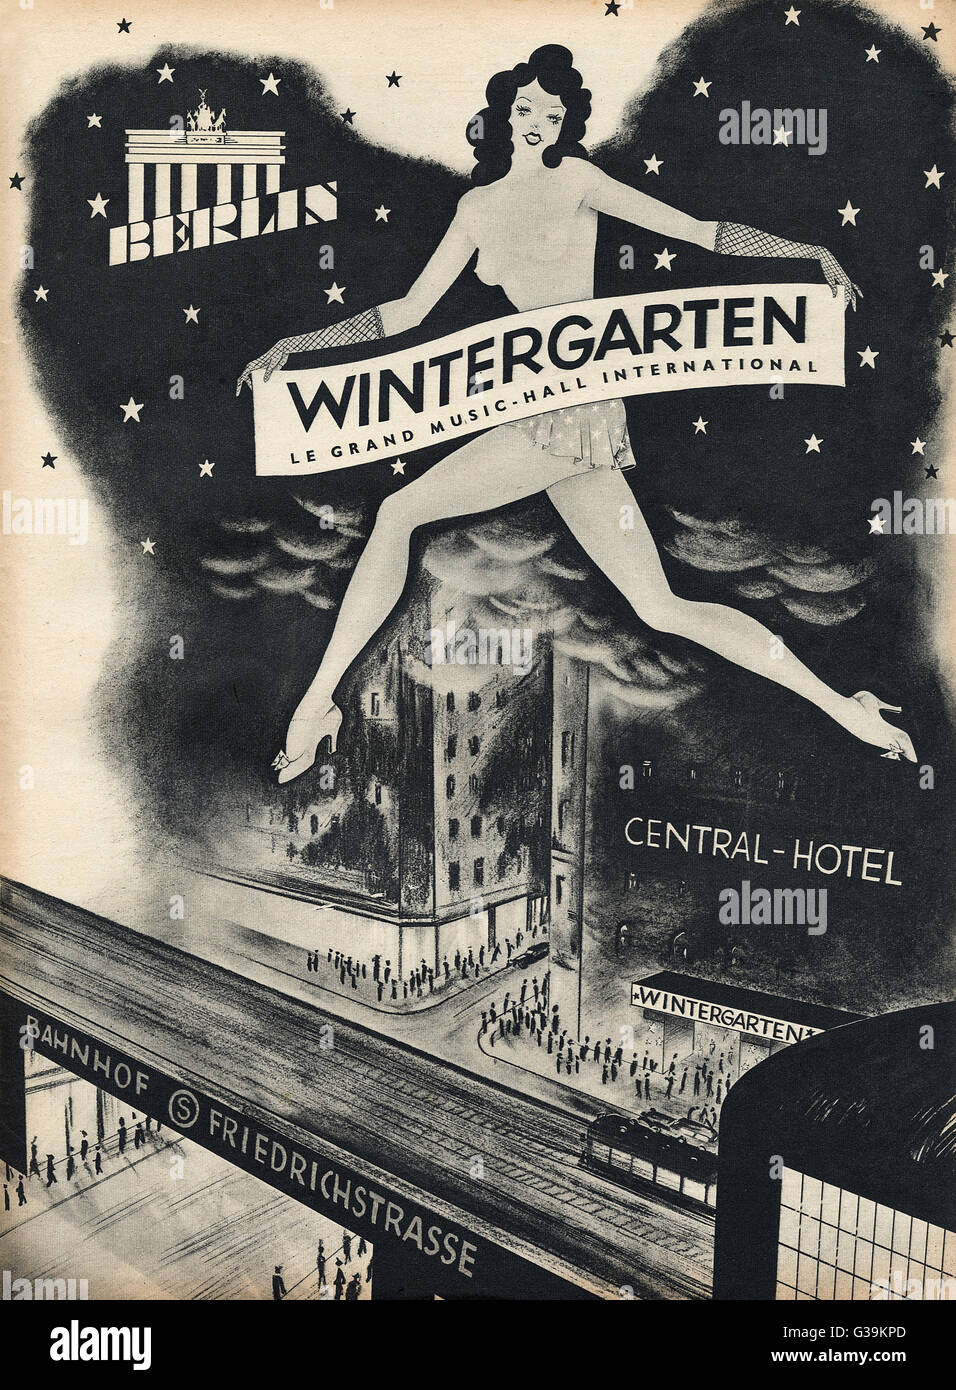 Diese Werbung für das Wintergarten Varieté im Central Hotel, Berlin, zeigt, dass Berliner Nachtleben, trotz der Feind Datum genießen konnten: September 1941 Stockfoto